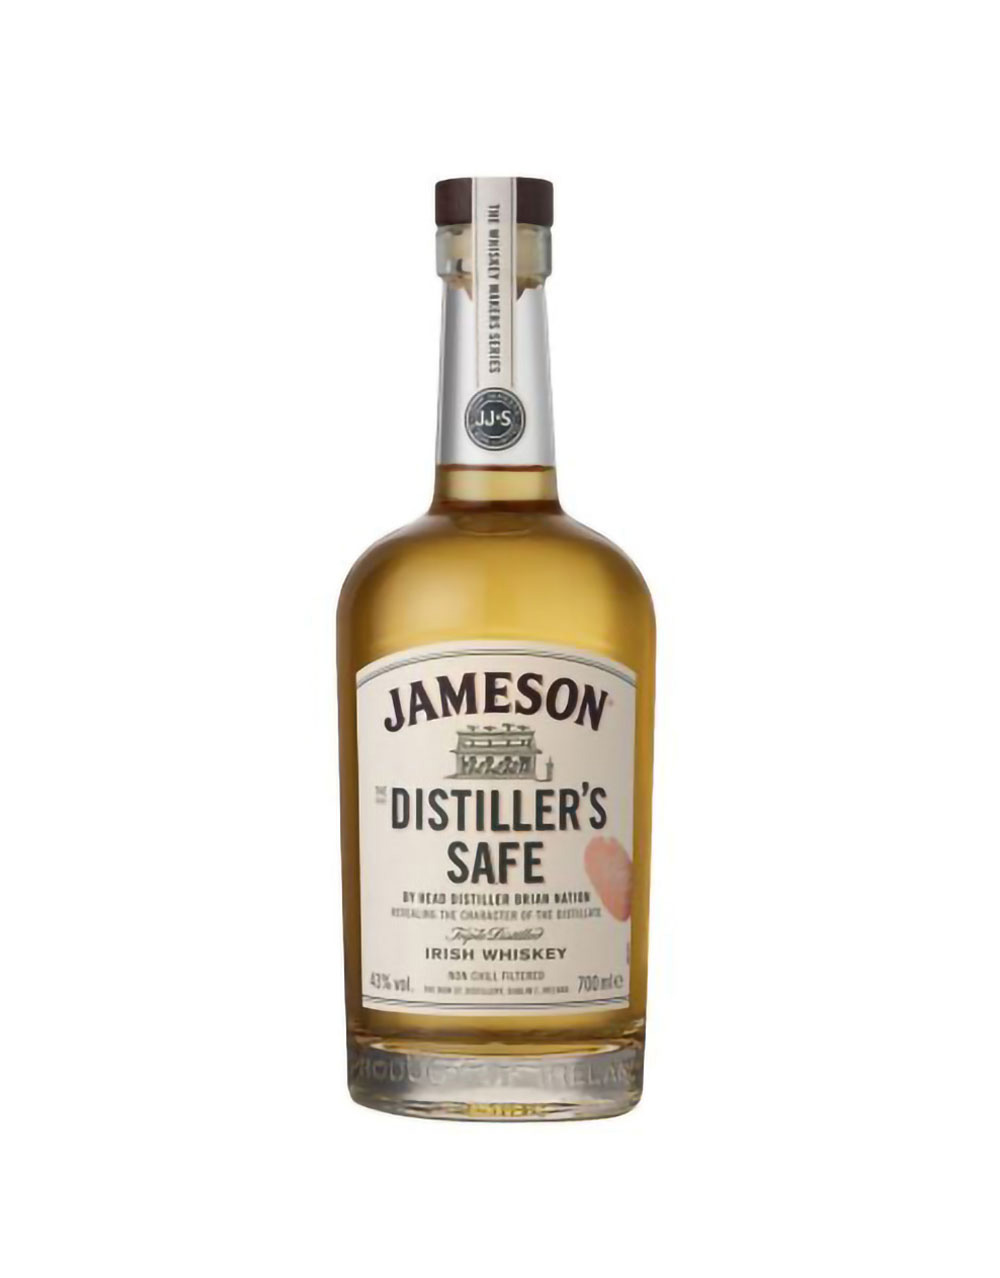 Jameson The Distiller's Safe Irish Whiskey